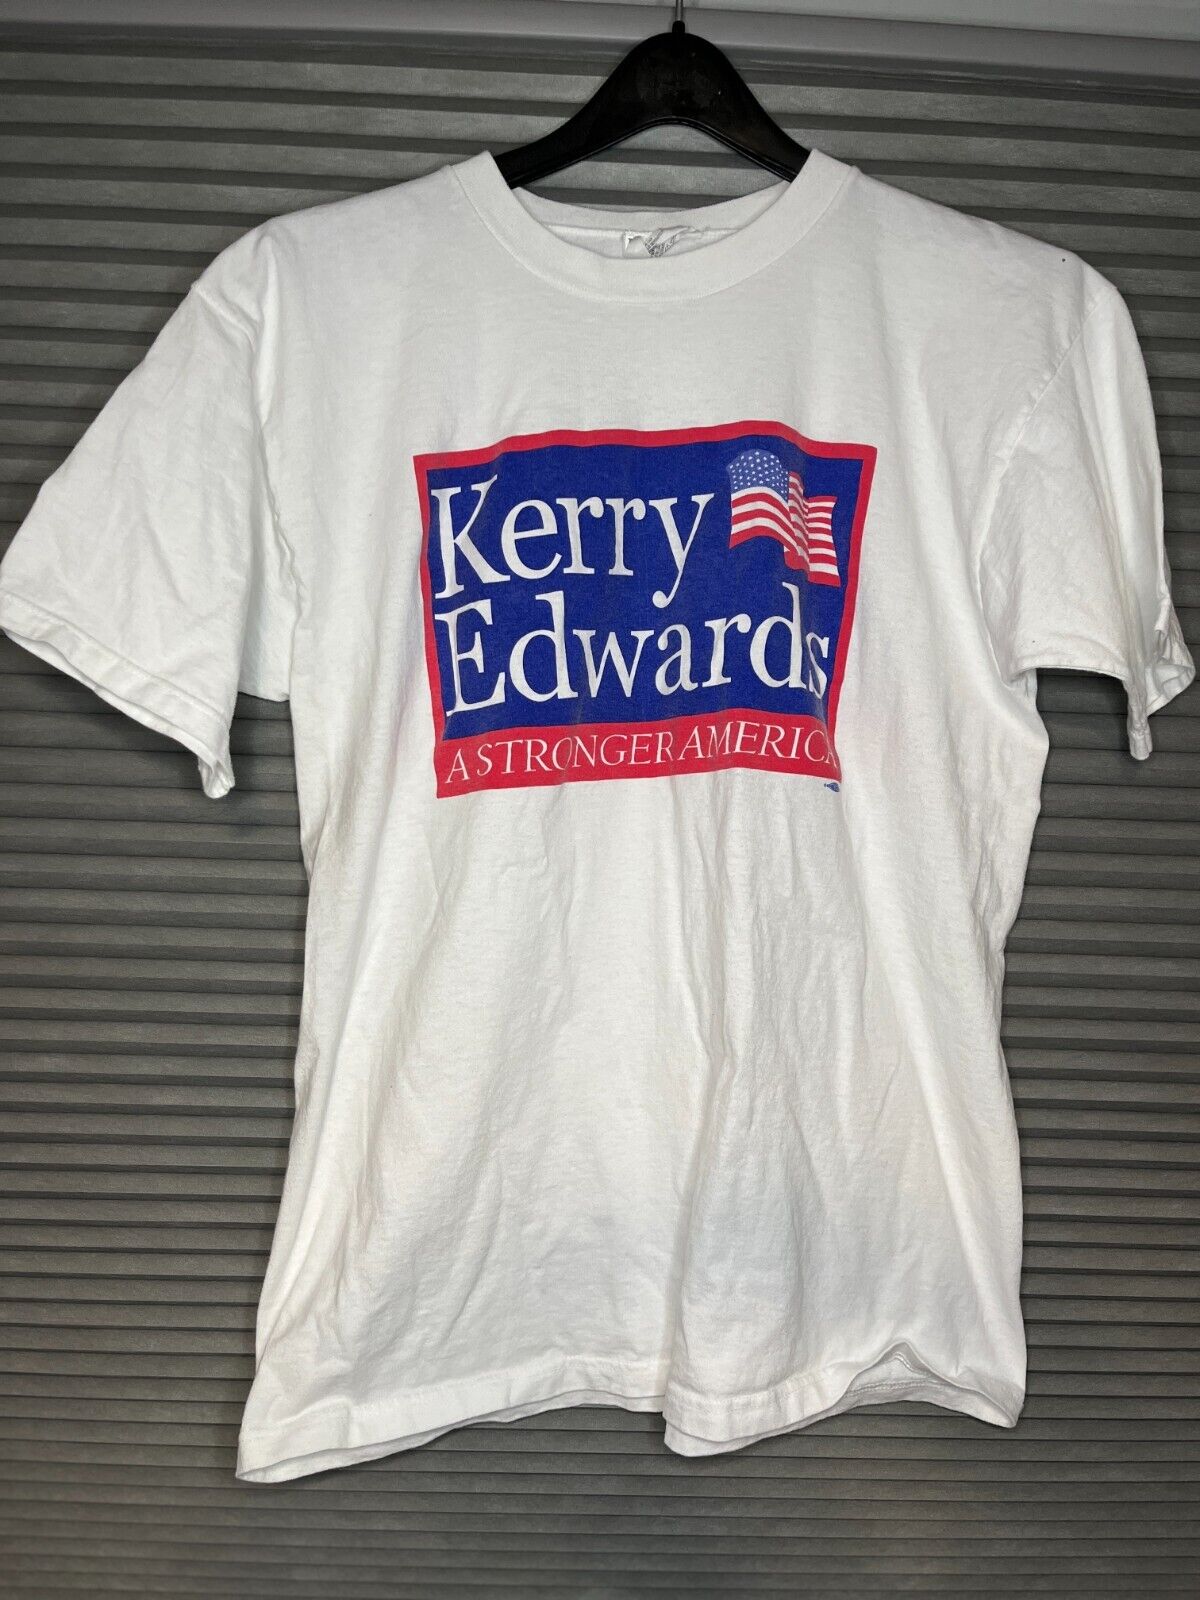 Vintage John Kerry John Edwards Political T-Shirt 2004 Size XL